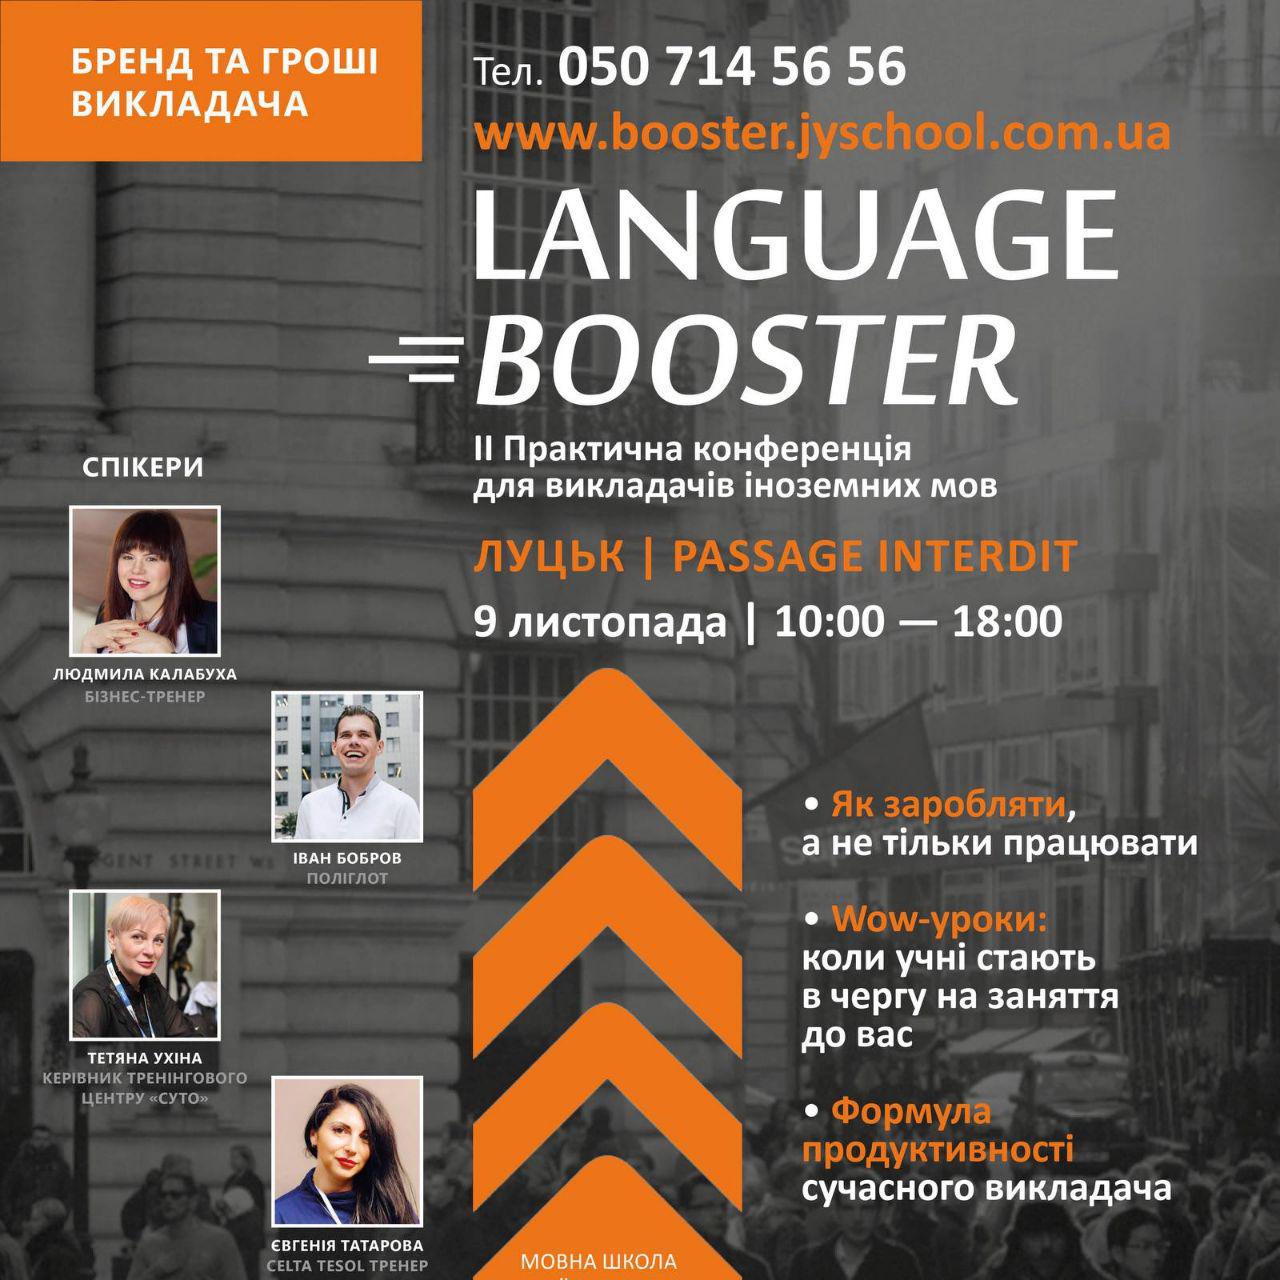 У Луцьку відбудеться наймасштабніша на Волині конференція для викладачів іноземних мов*